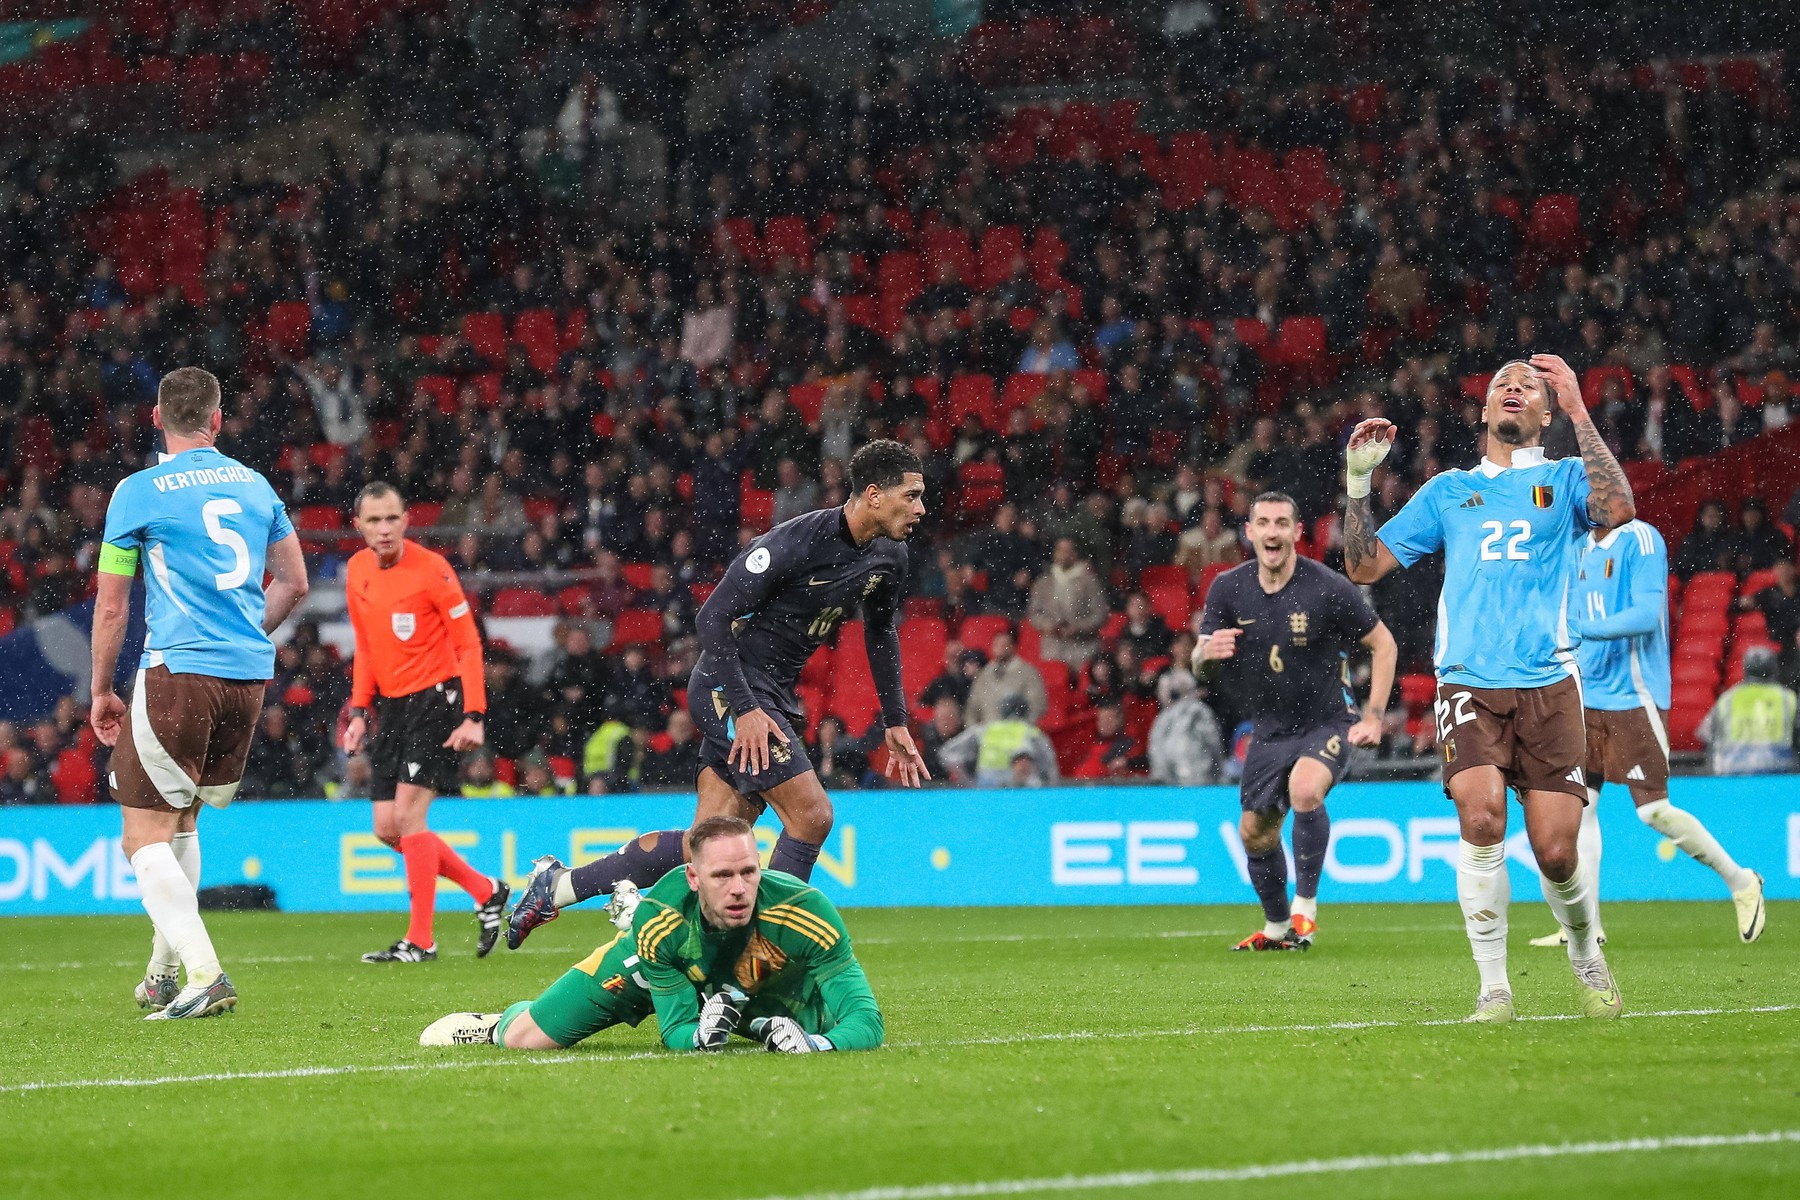 Selecționer dezamăgit după remiza Anglia - Belgia 2-2. Gol marcat cu 5 secunde înainte de fluierul final